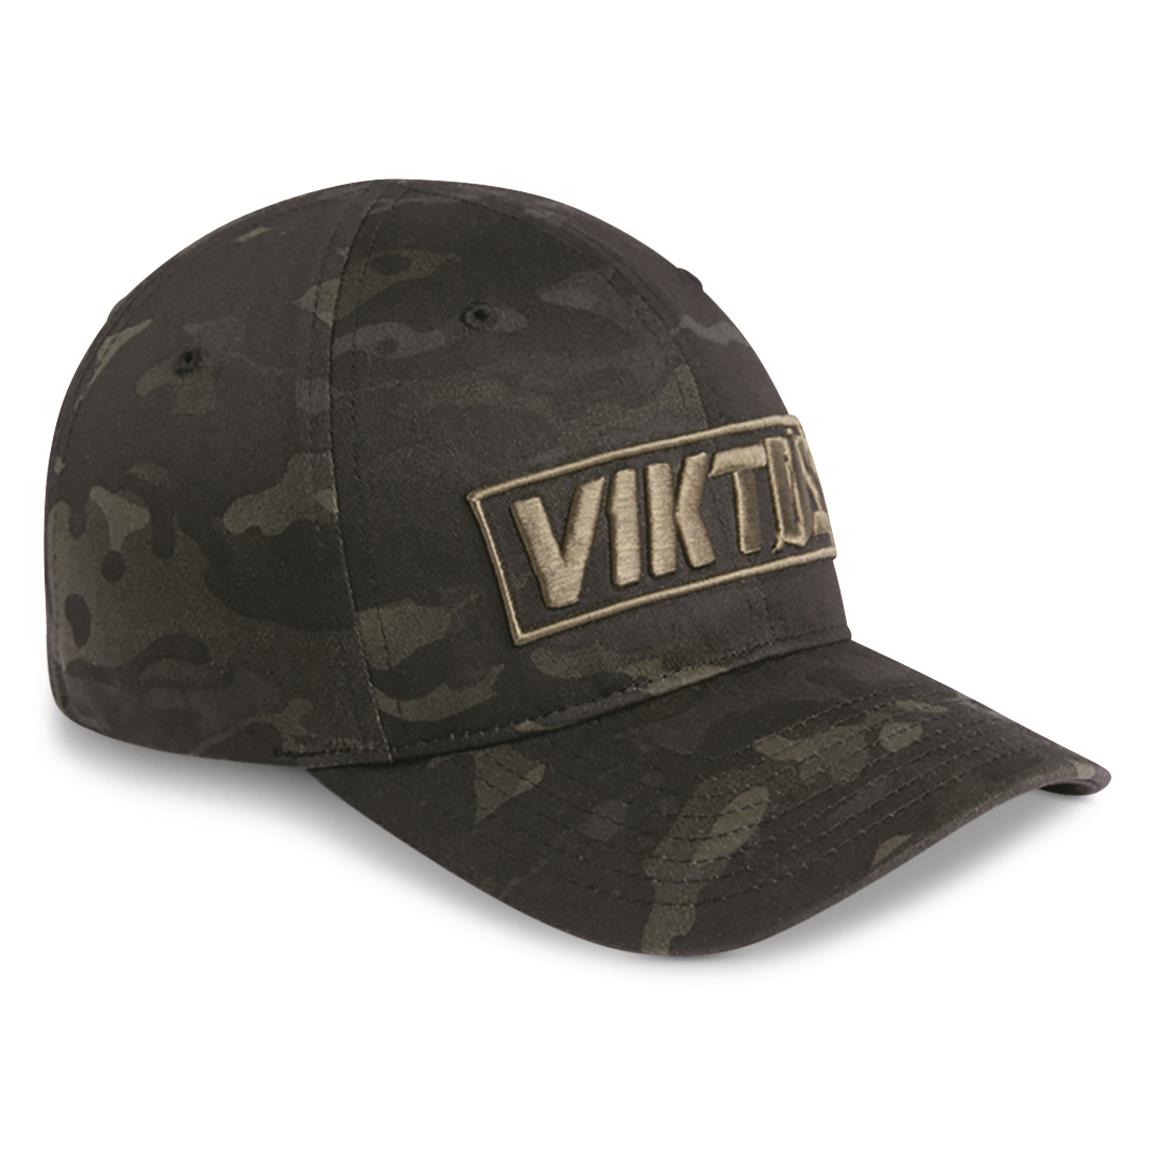 Viktos Tiltup Hat, Multicam Black